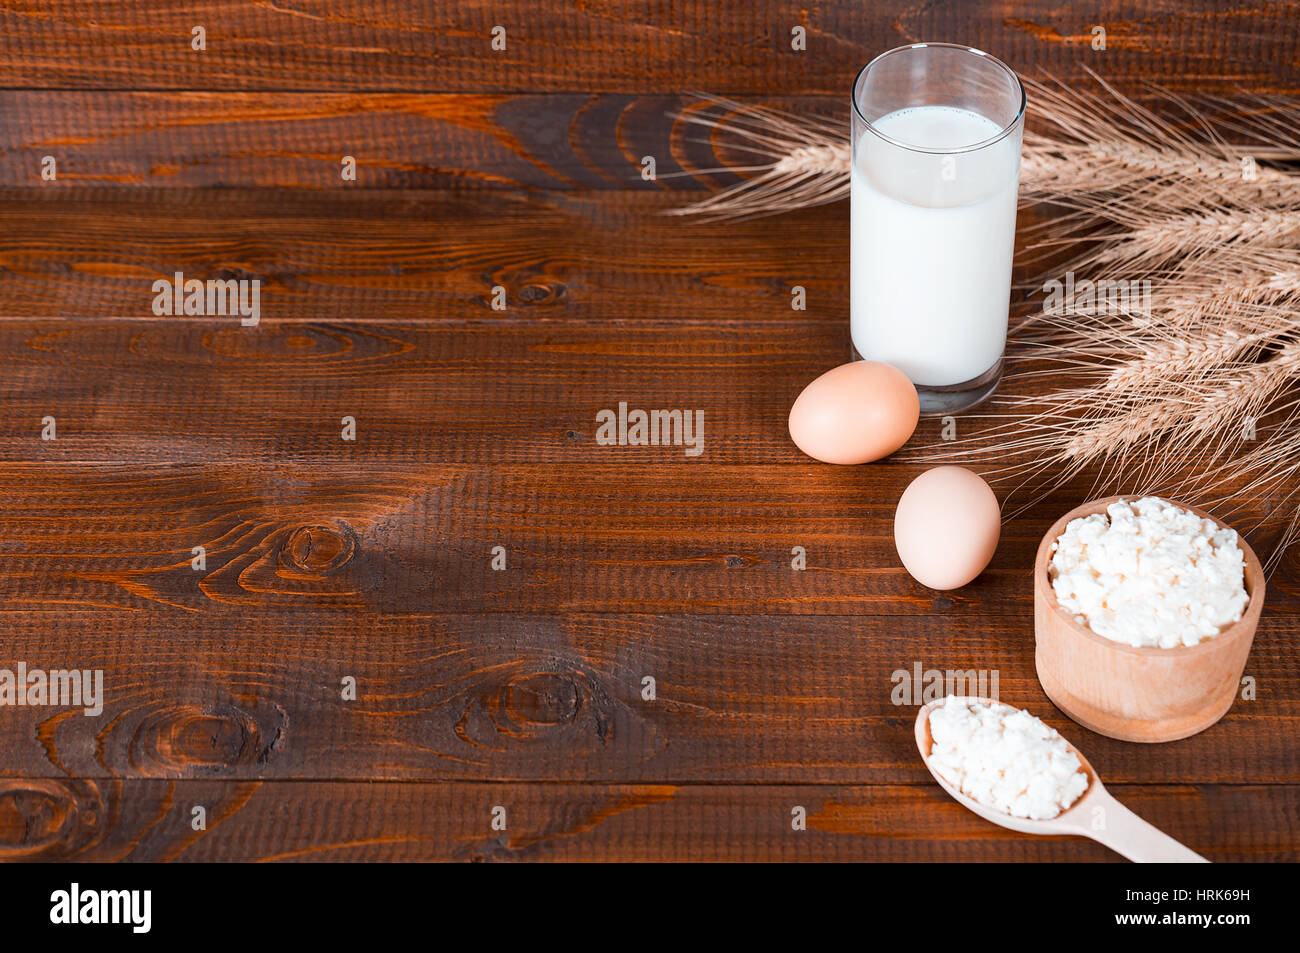 Les produits faits maison : le lait, le fromage, la crème et les oeufs sur le vieux fond de bois avec des épis de blé. Avec l'espace pour votre texte Banque D'Images